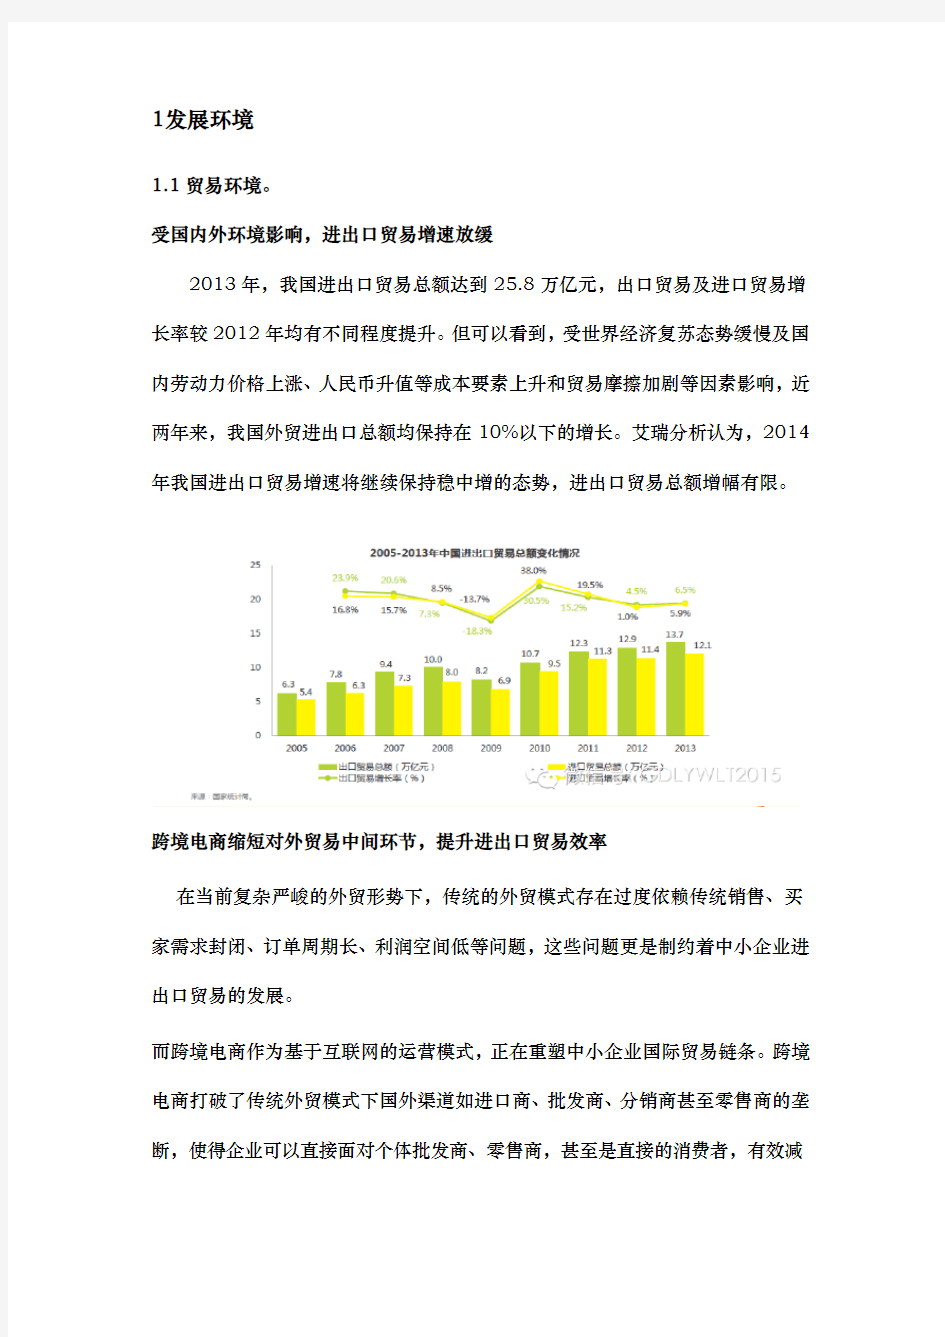 中国跨境电商行业分析报告文案